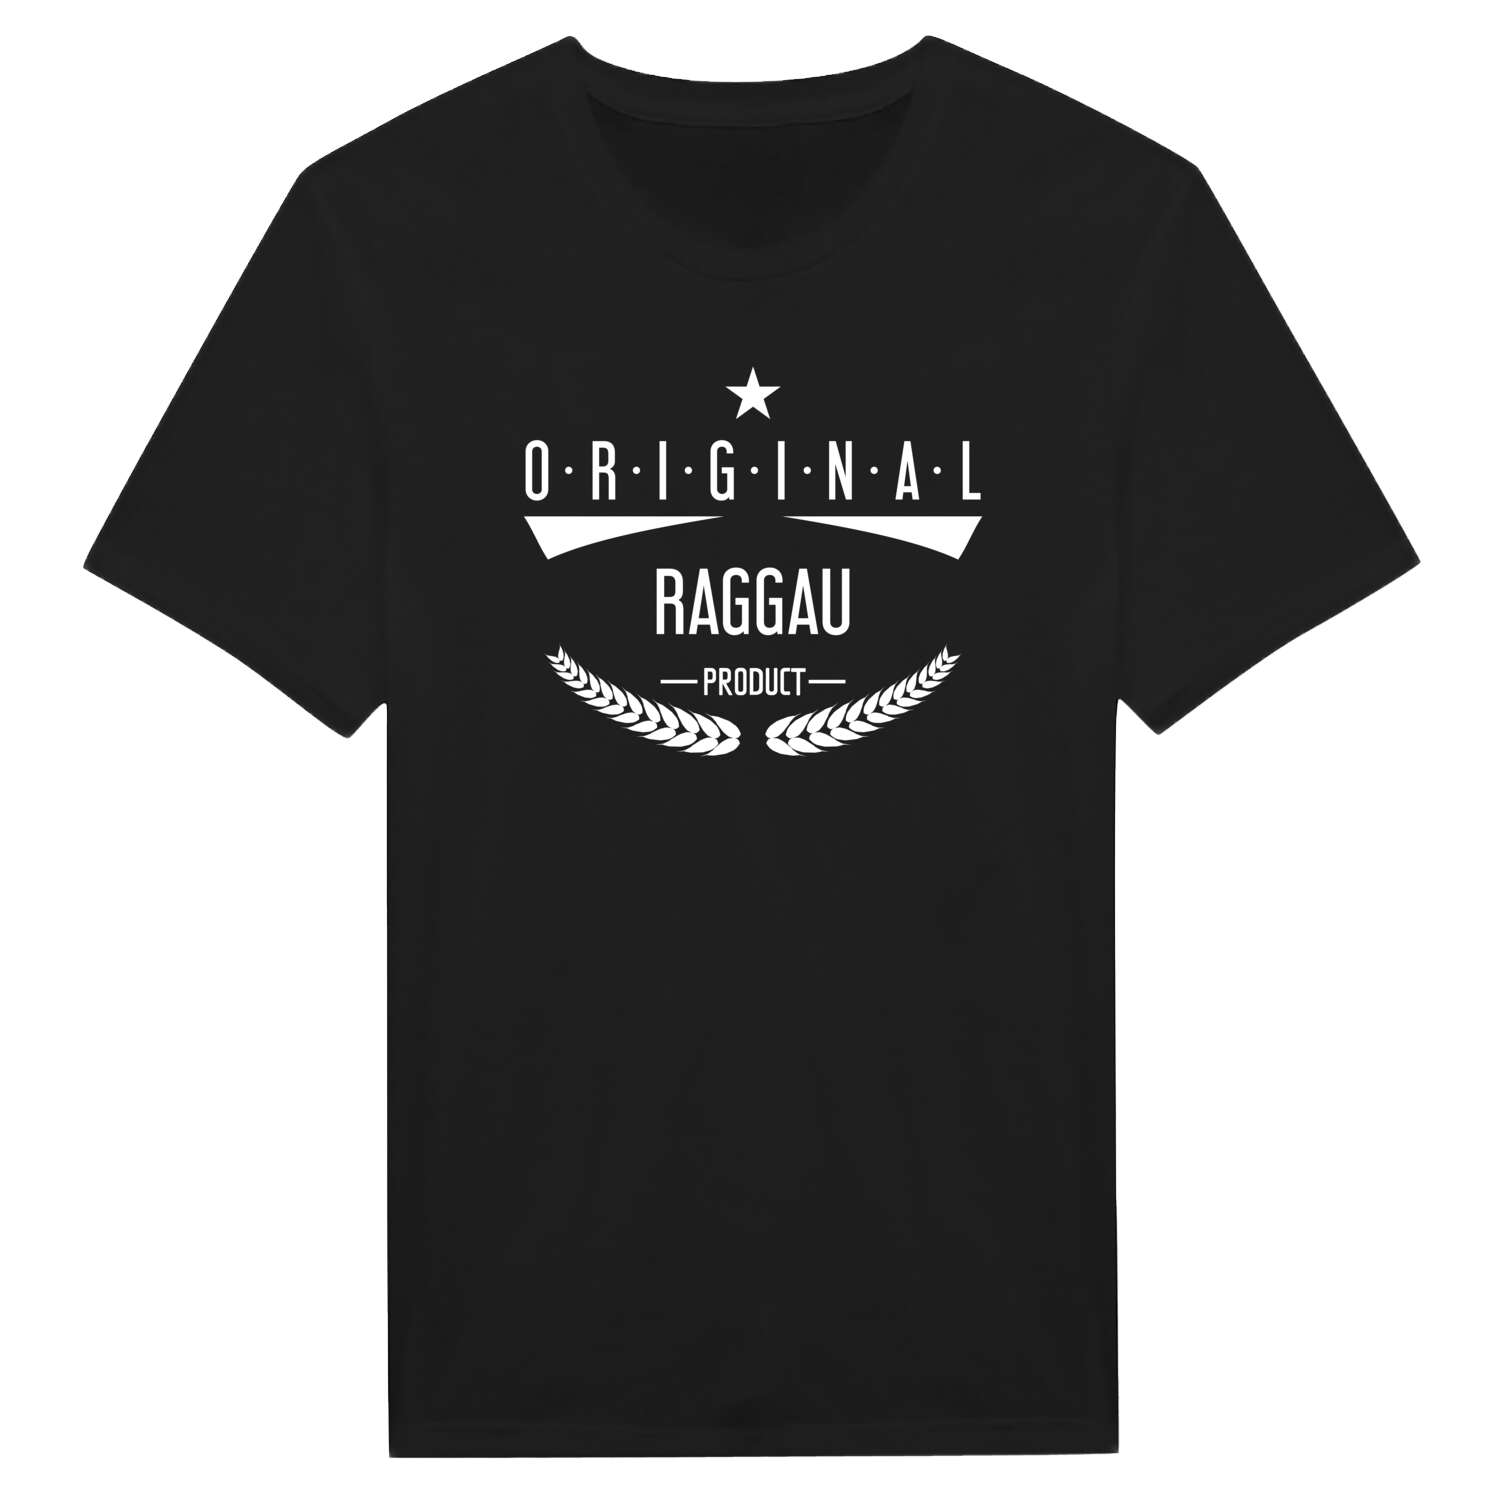 Raggau T-Shirt »Original Product«